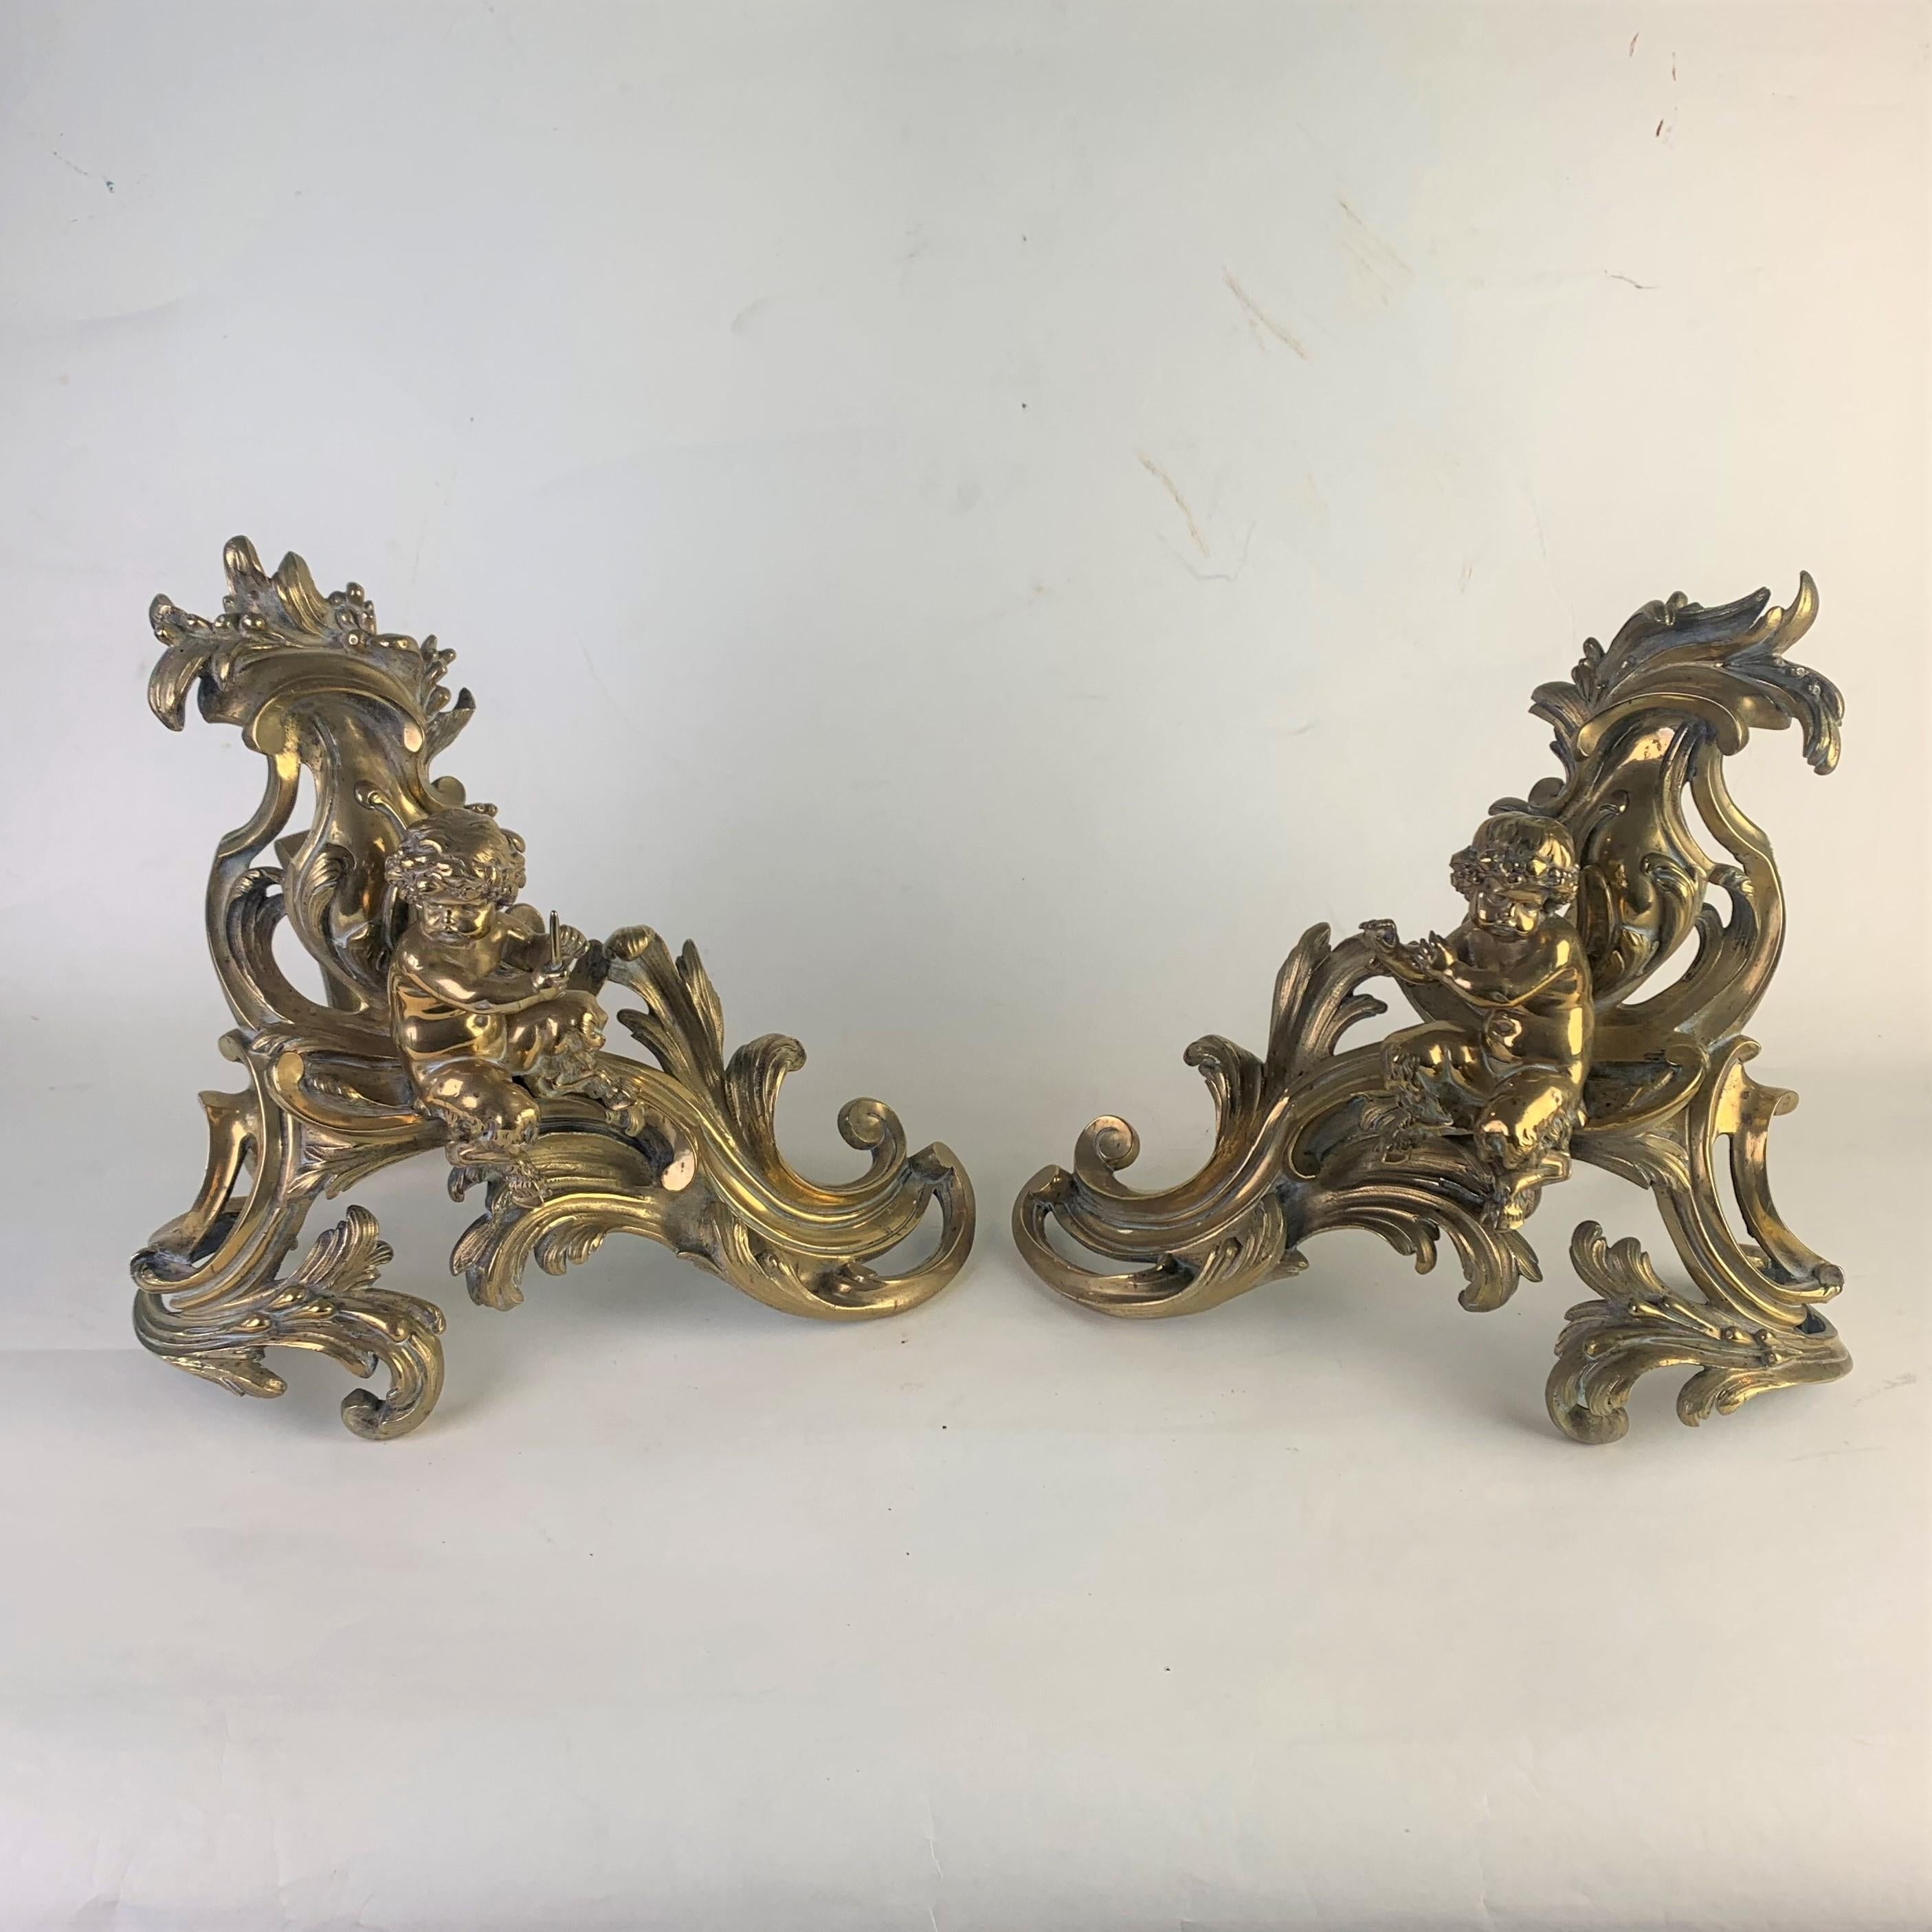 Ein sehr schönes Paar opulenter, vergoldeter Messing-Kaminöfen des späten 19. Jahrhunderts im Rokoko-Stil. Dargestellt sind sitzende Rehkitze, die Kerzen inmitten von kunstvollen Schriftrollen halten.
Äußerst dekorative Exemplare, die ursprünglich